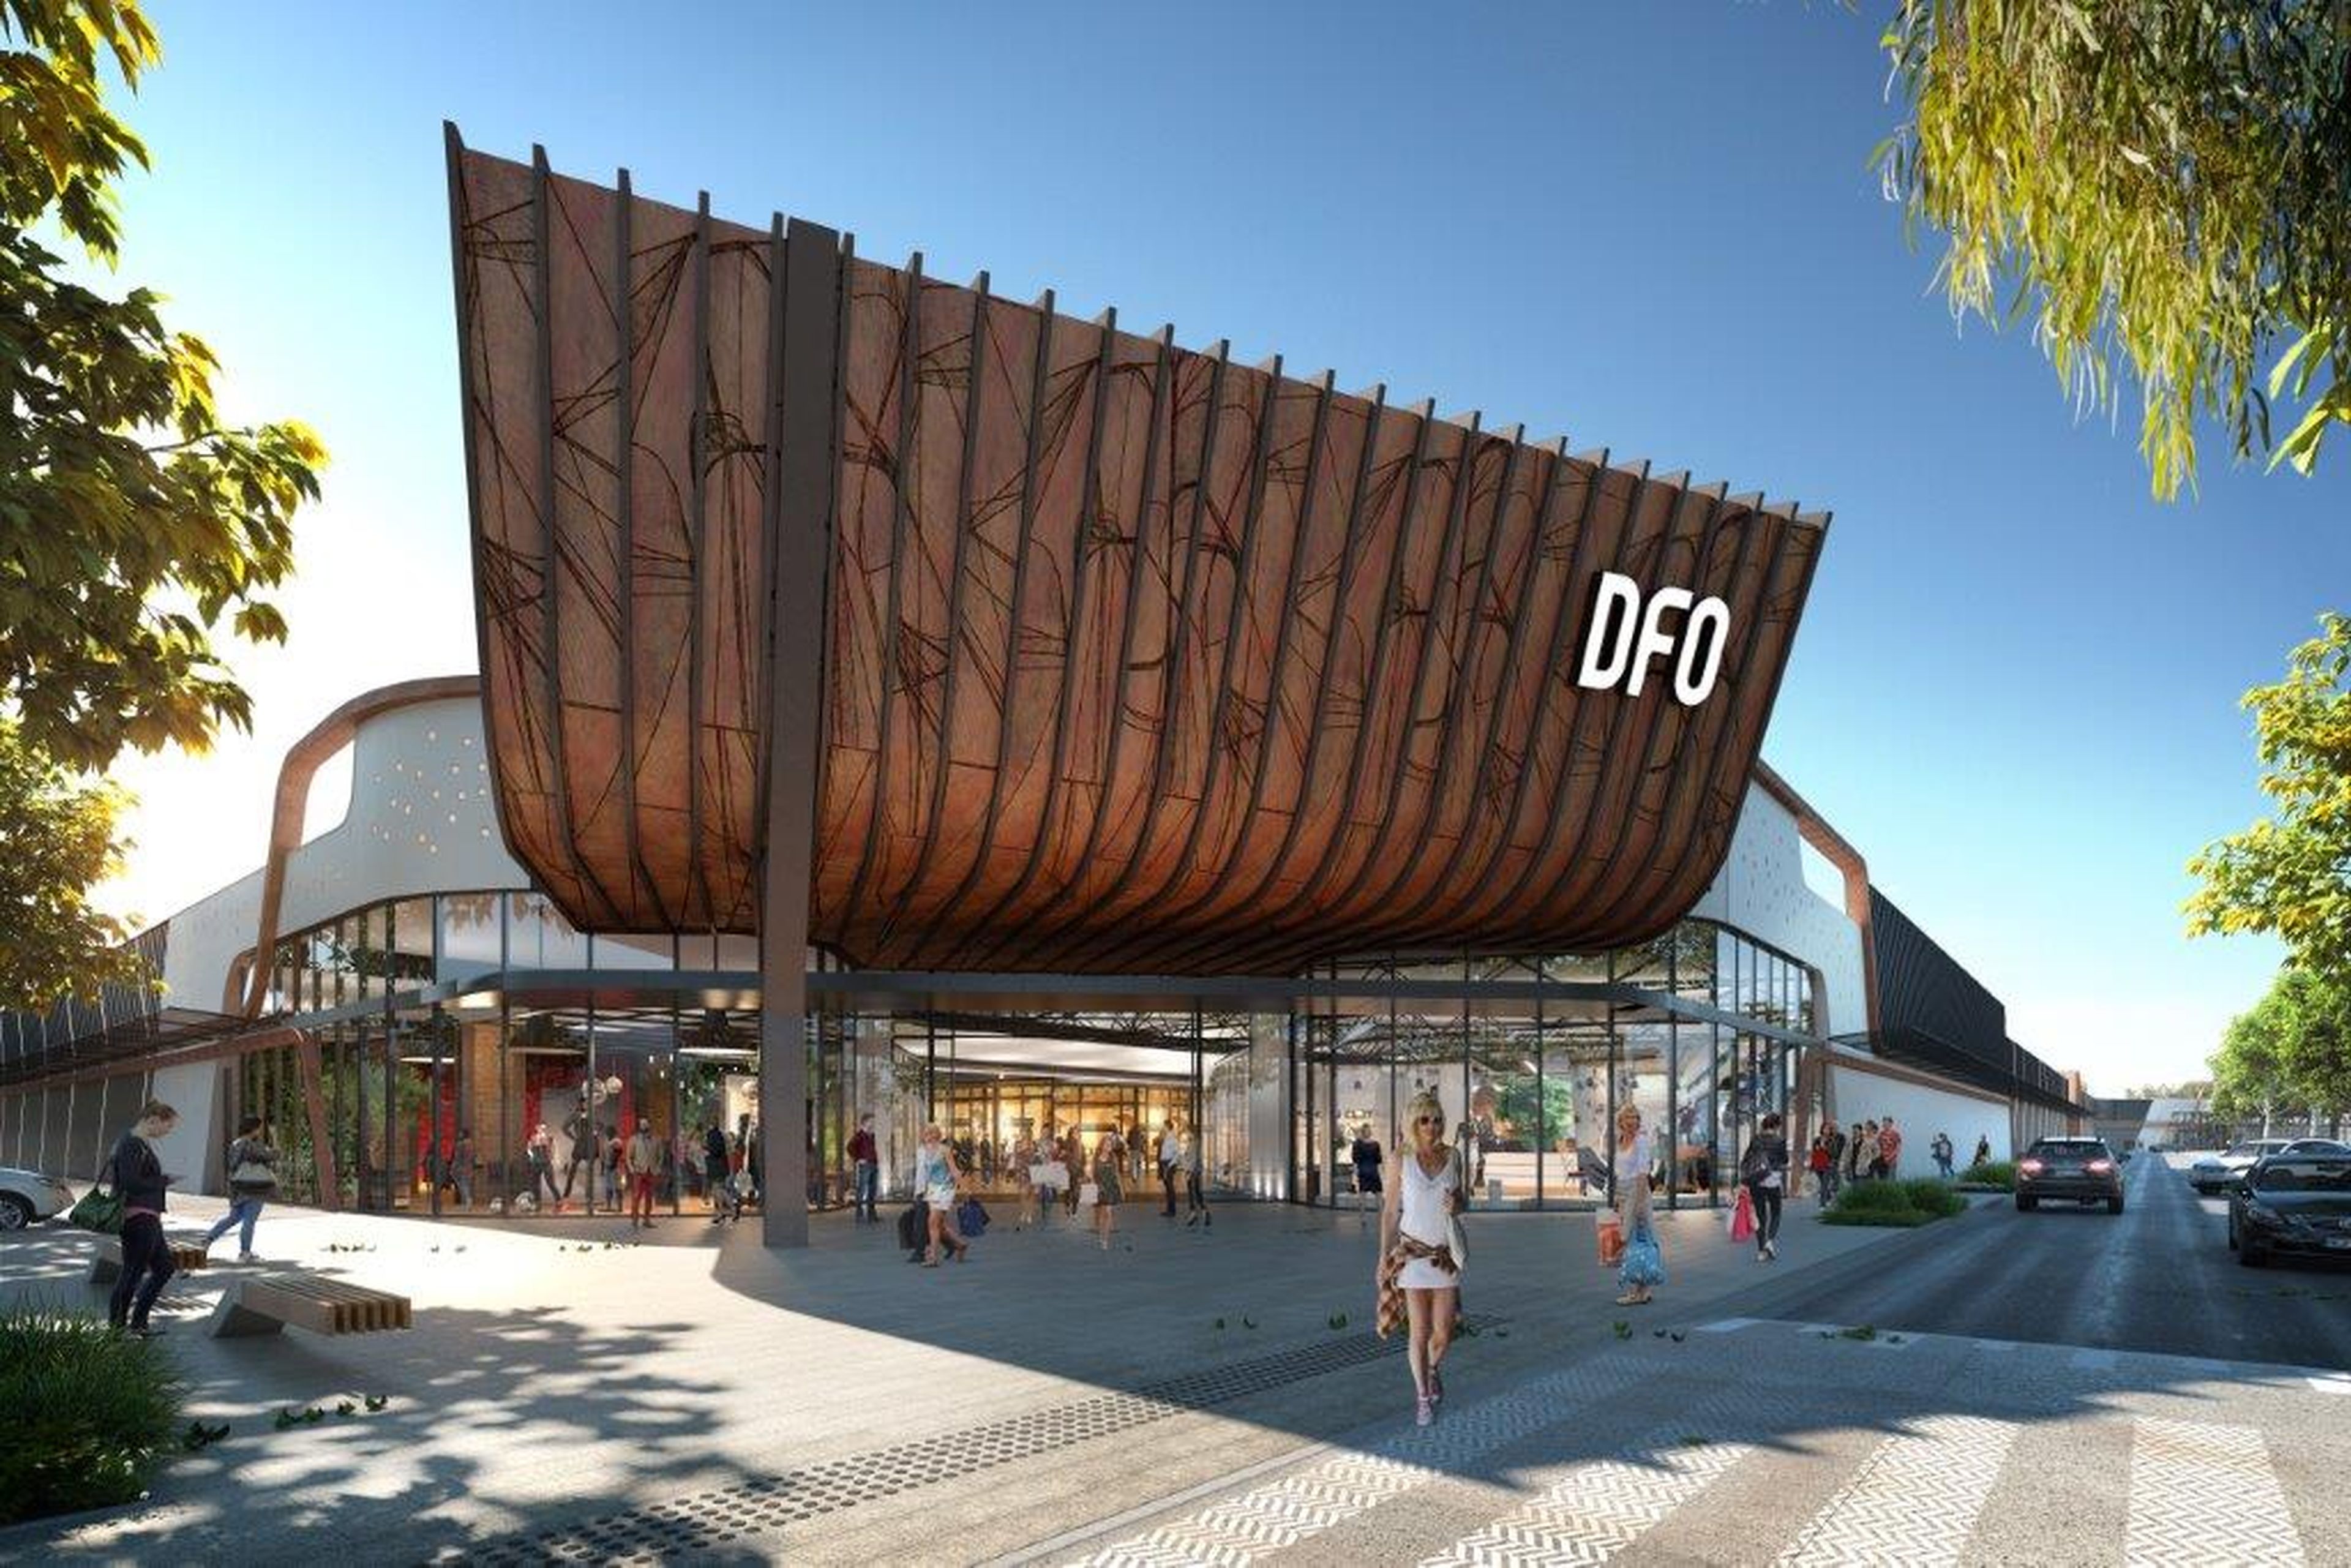 Centro comercial DFO en Perth (Australia), propiedad de Vicinity Centres